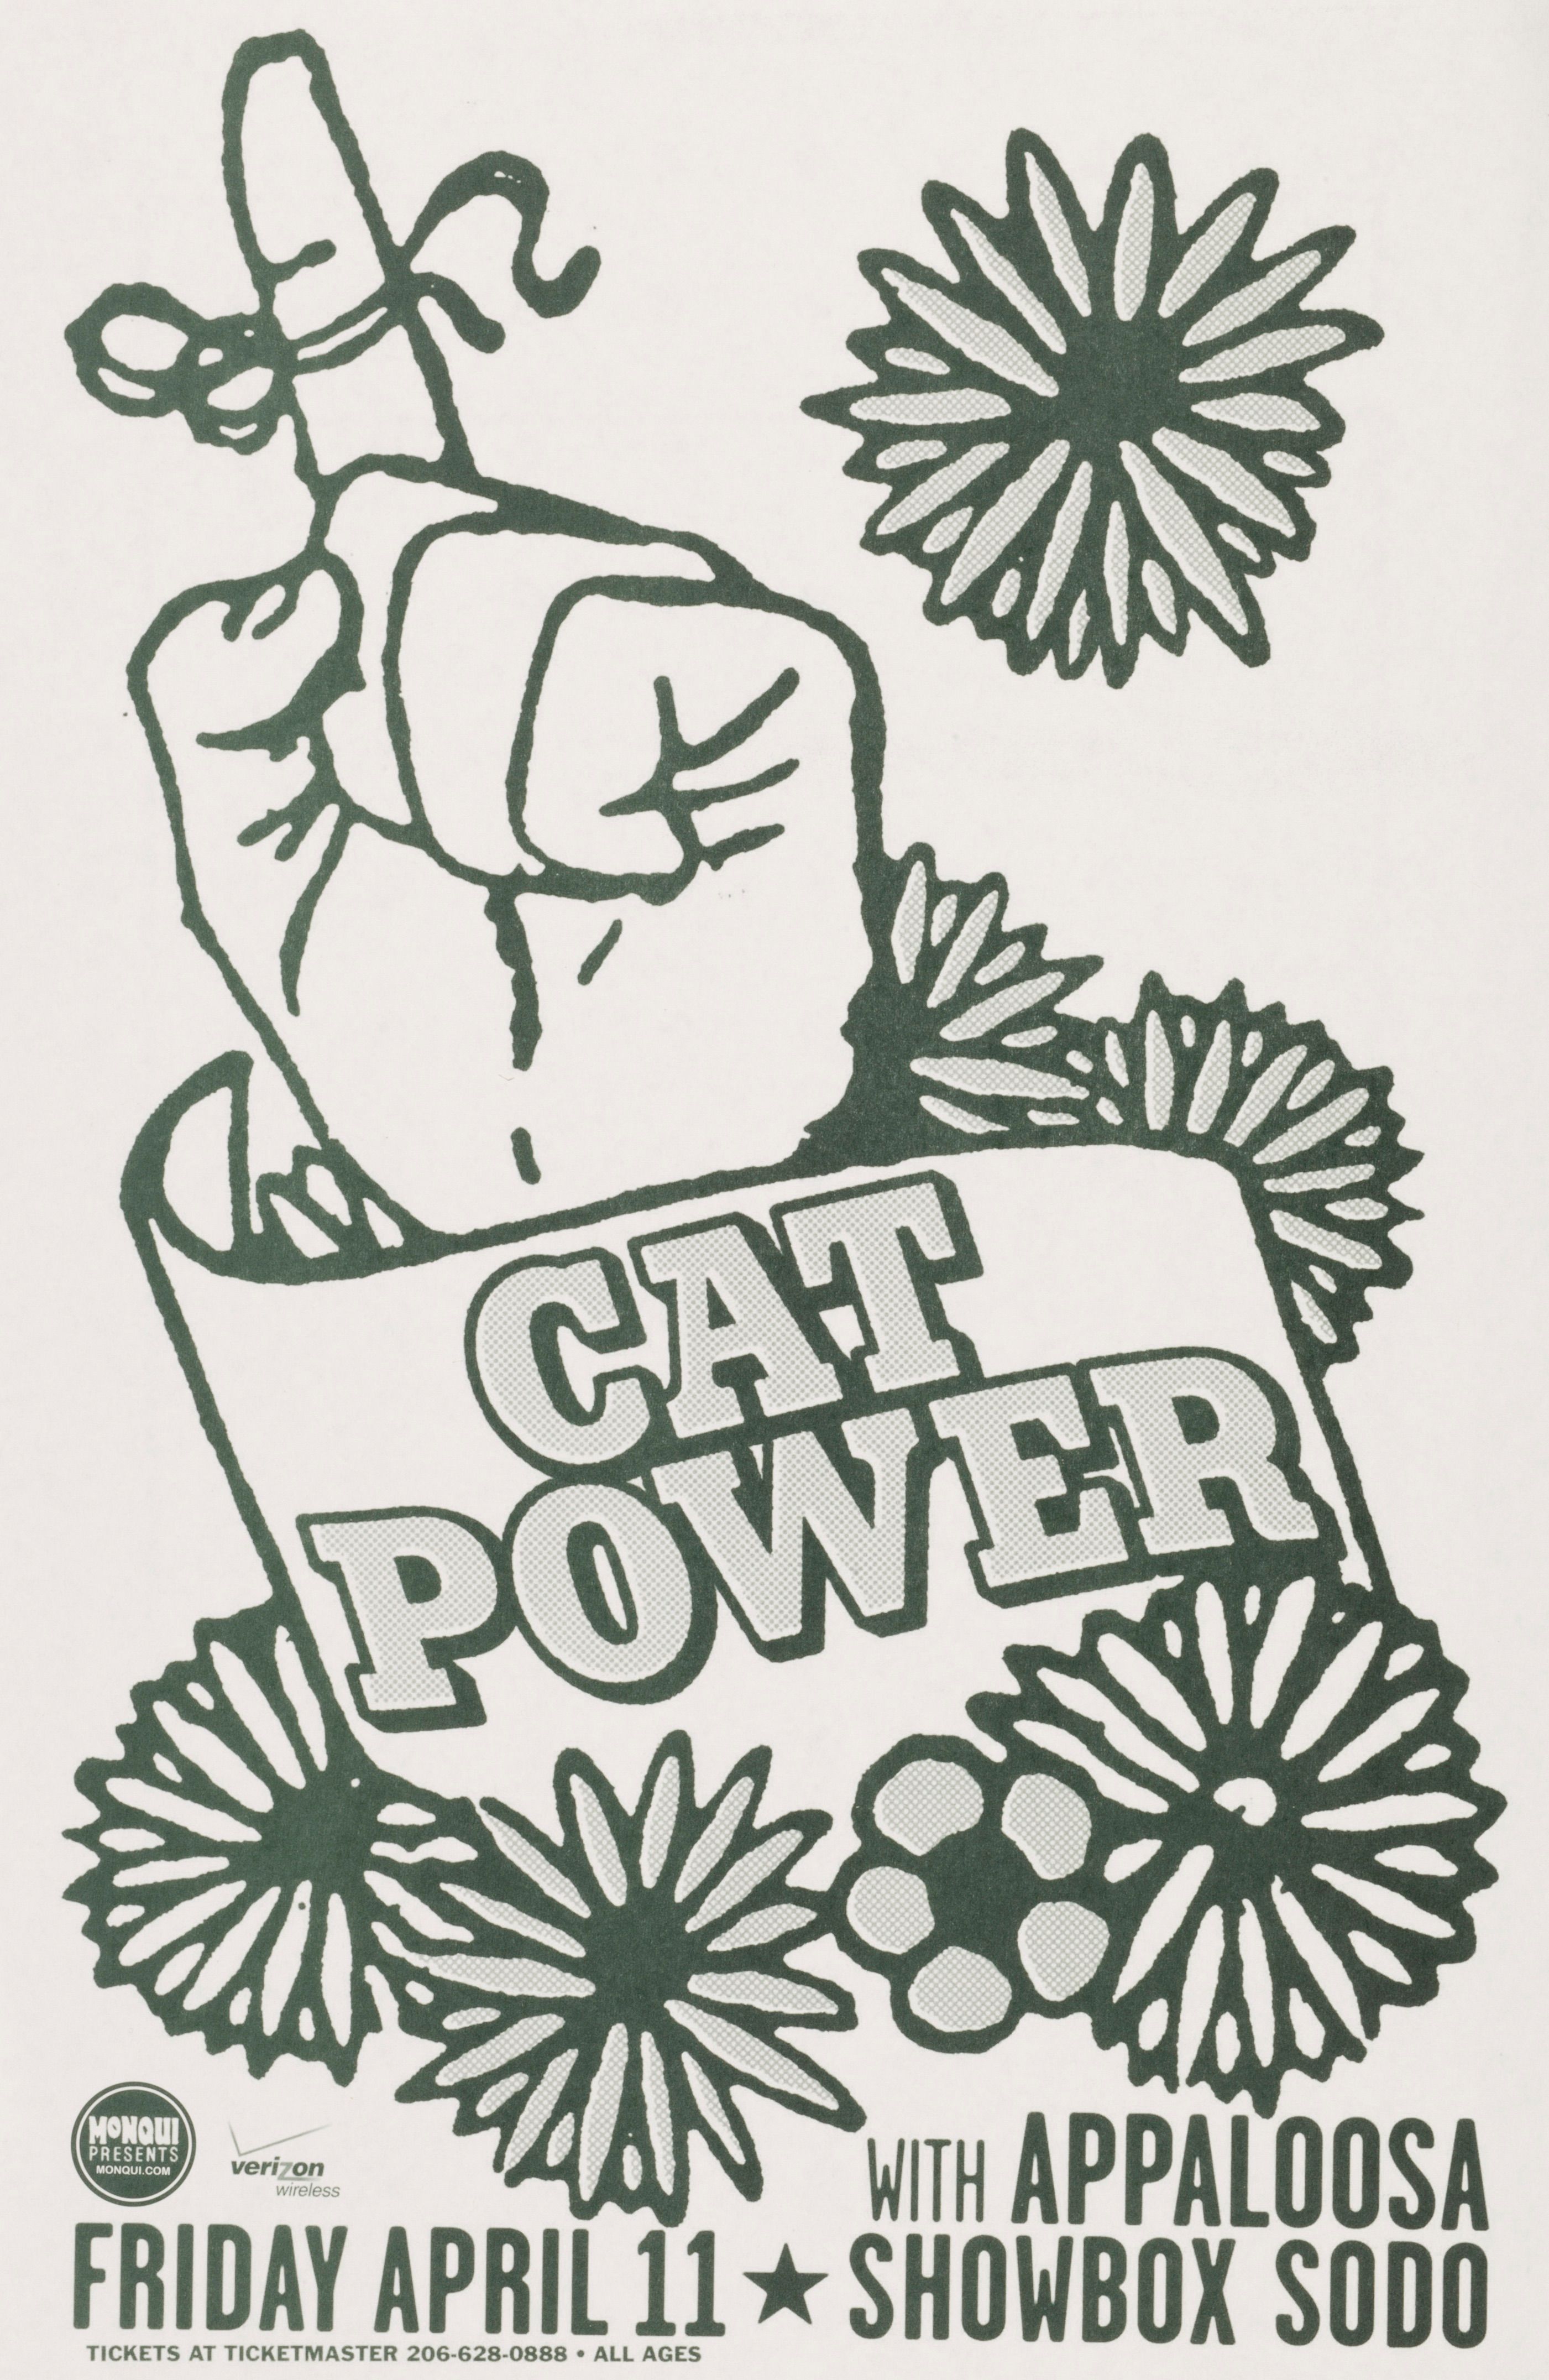 MXP-80.4 Cat Power 2008 Showbox  Apr 11 Concert Poster